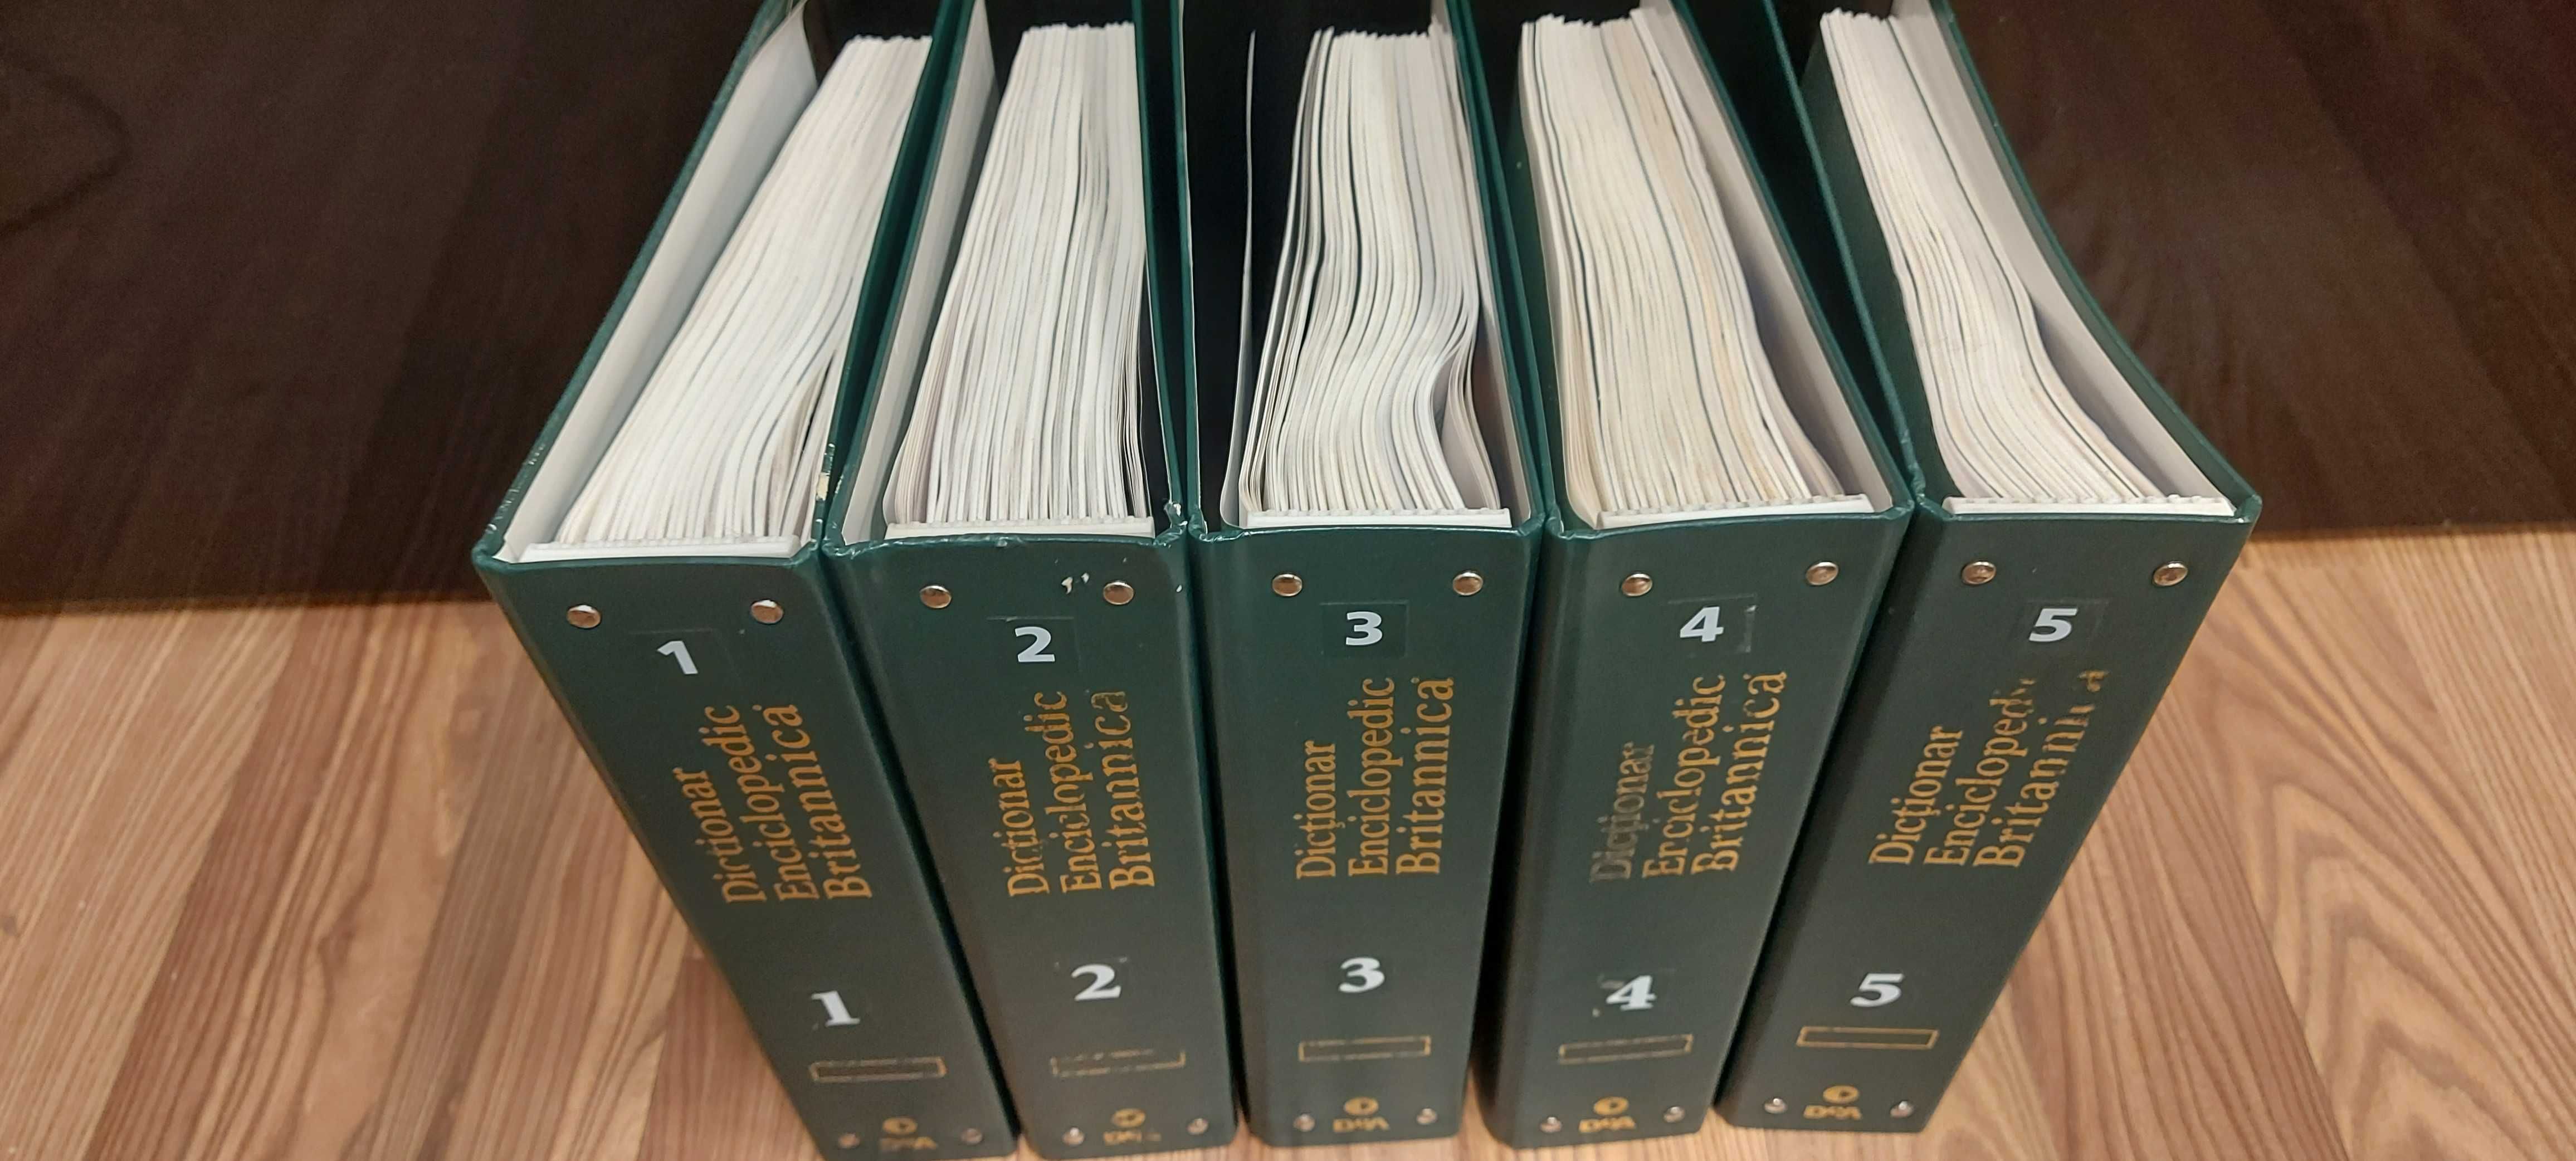 Vand colectia "Dictionar Enciclopedic Britannica".